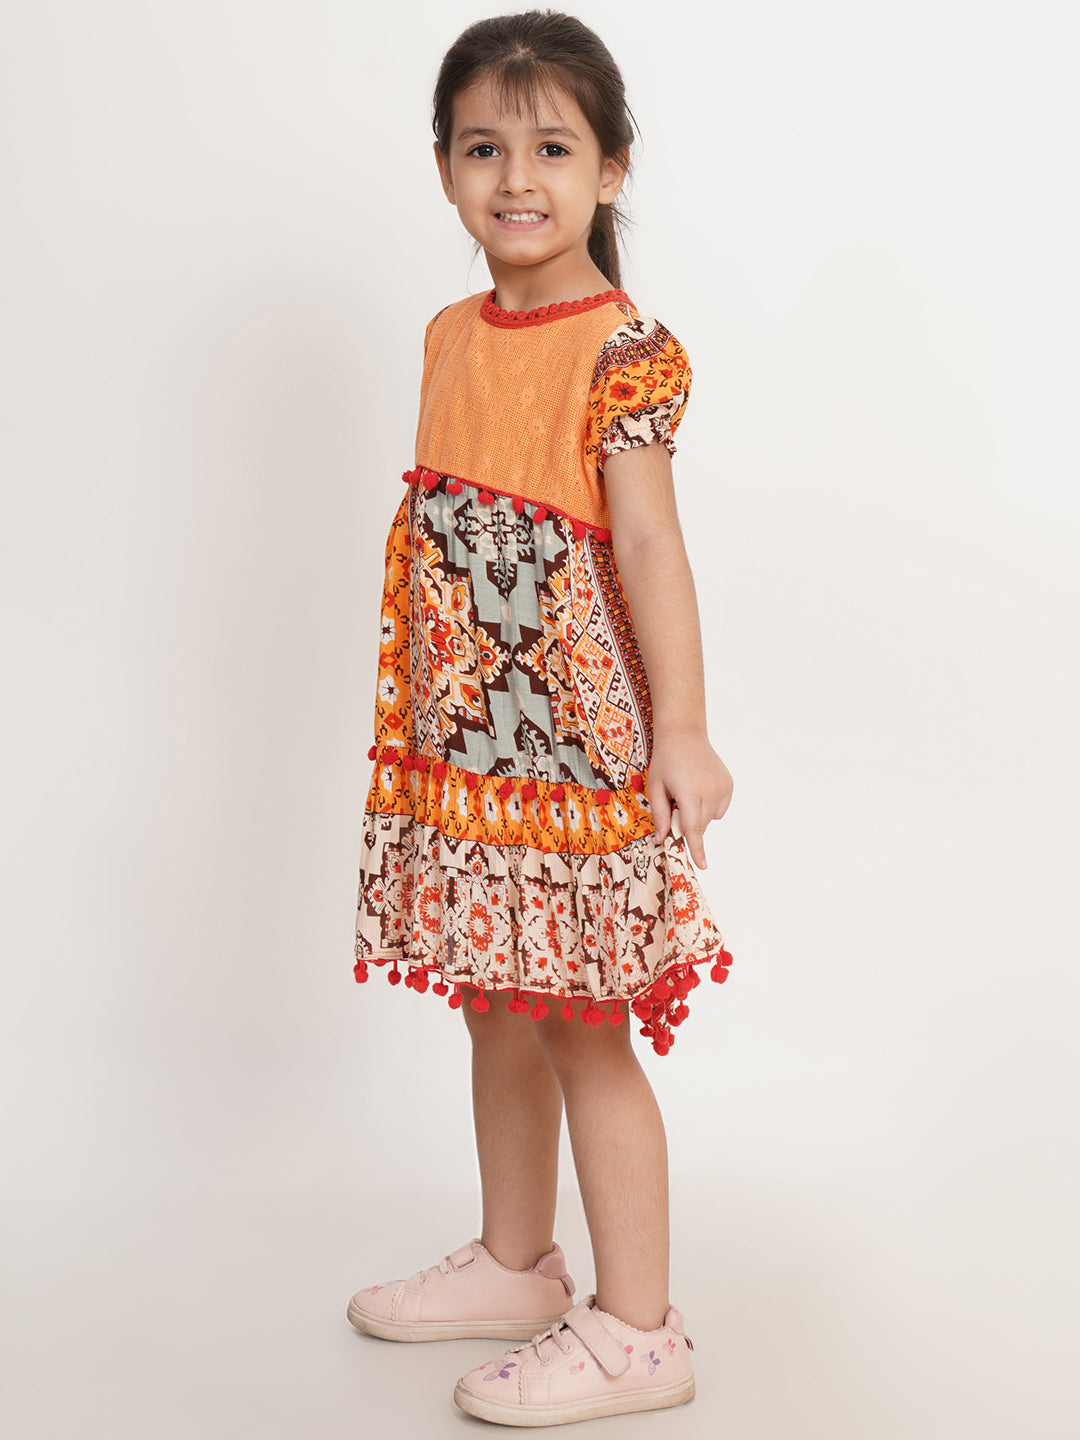 CREATIVE KID'S Girl Yellow & Red Schiffli Pom Pom A-Line Dress